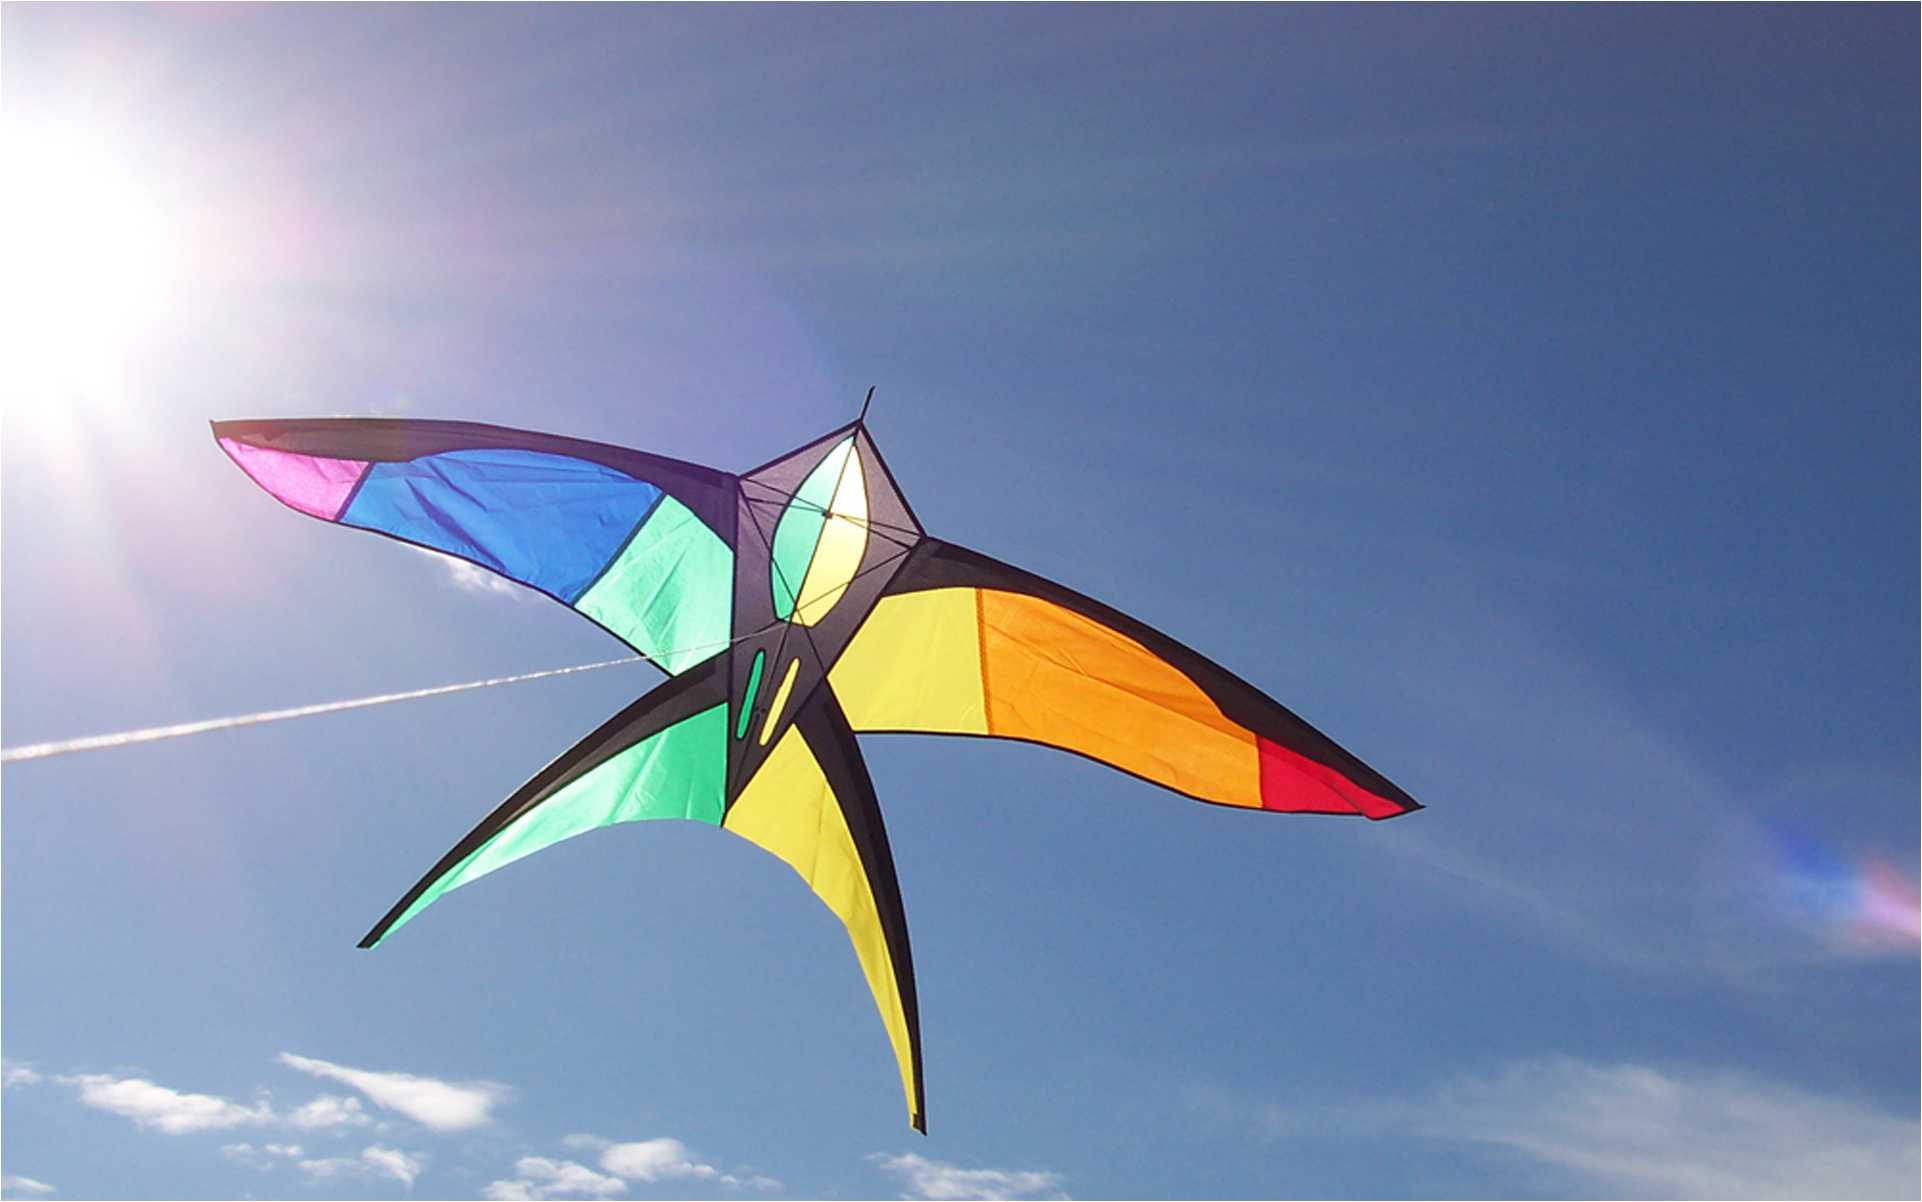 DX: Kite Wallpaper, Beautiful Kite Wallpaper